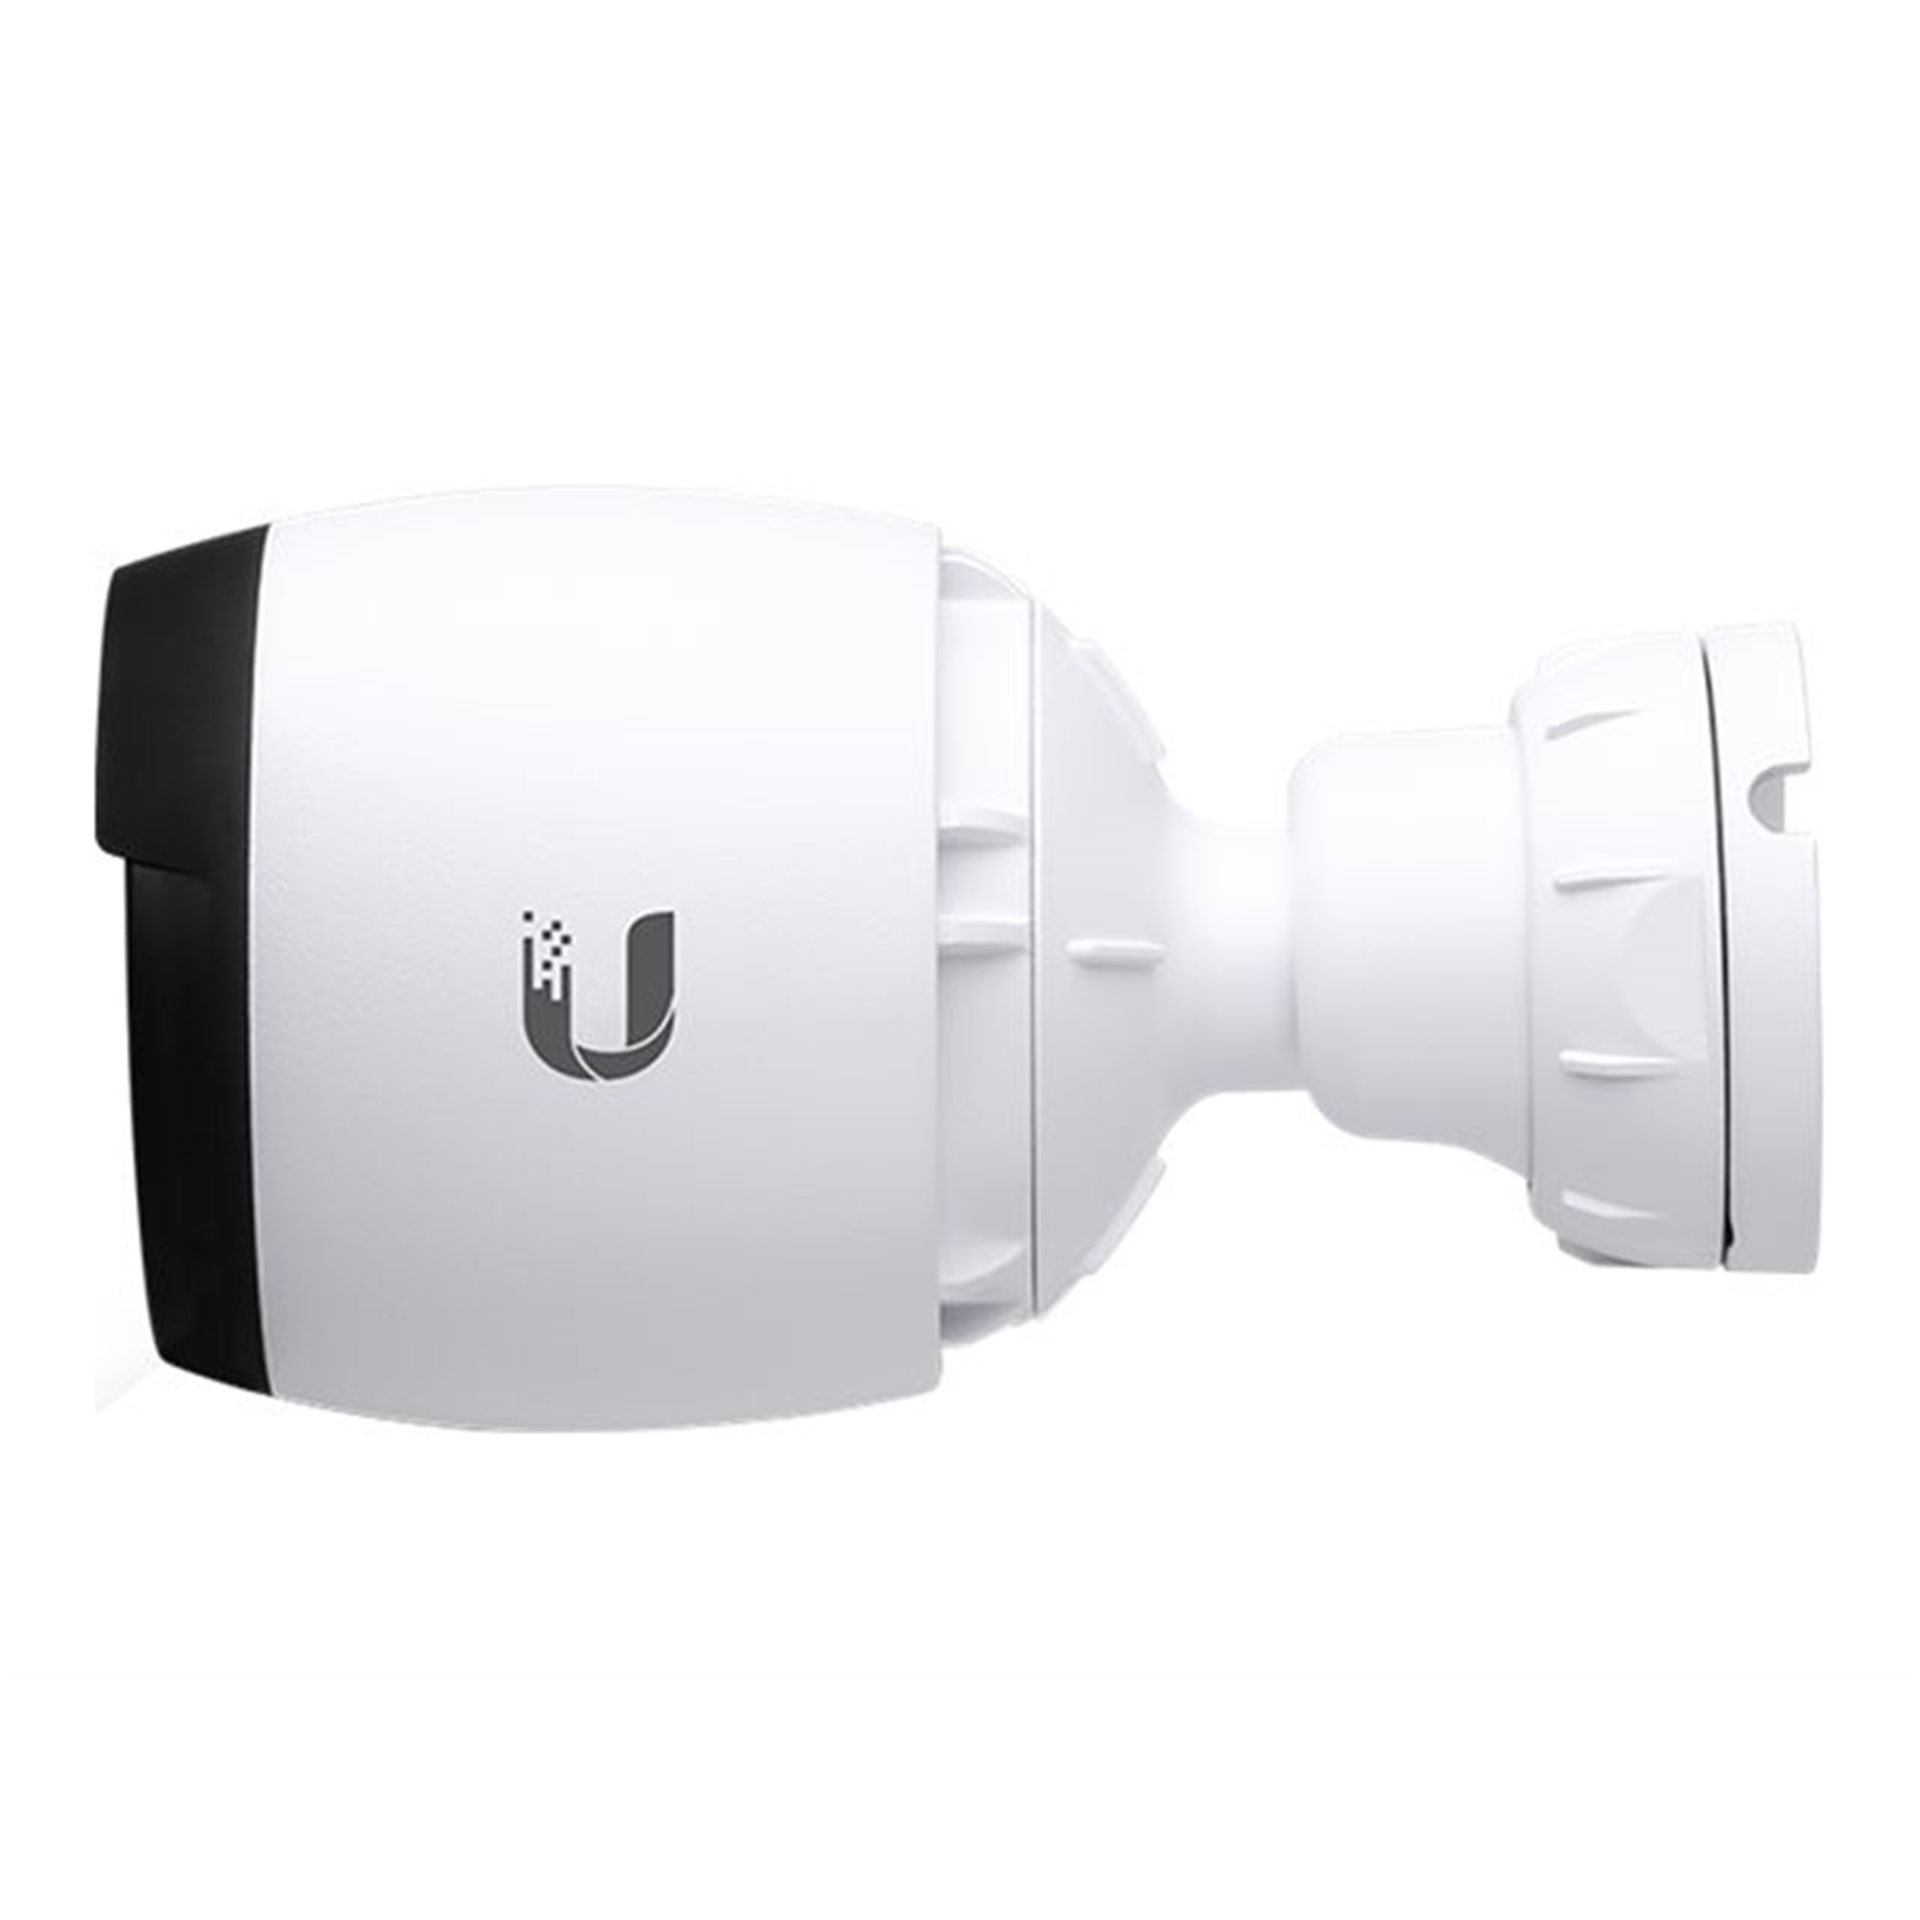 Ubiquiti UniFi Video Camera G4 Pro, 3 pack Ubiquiti